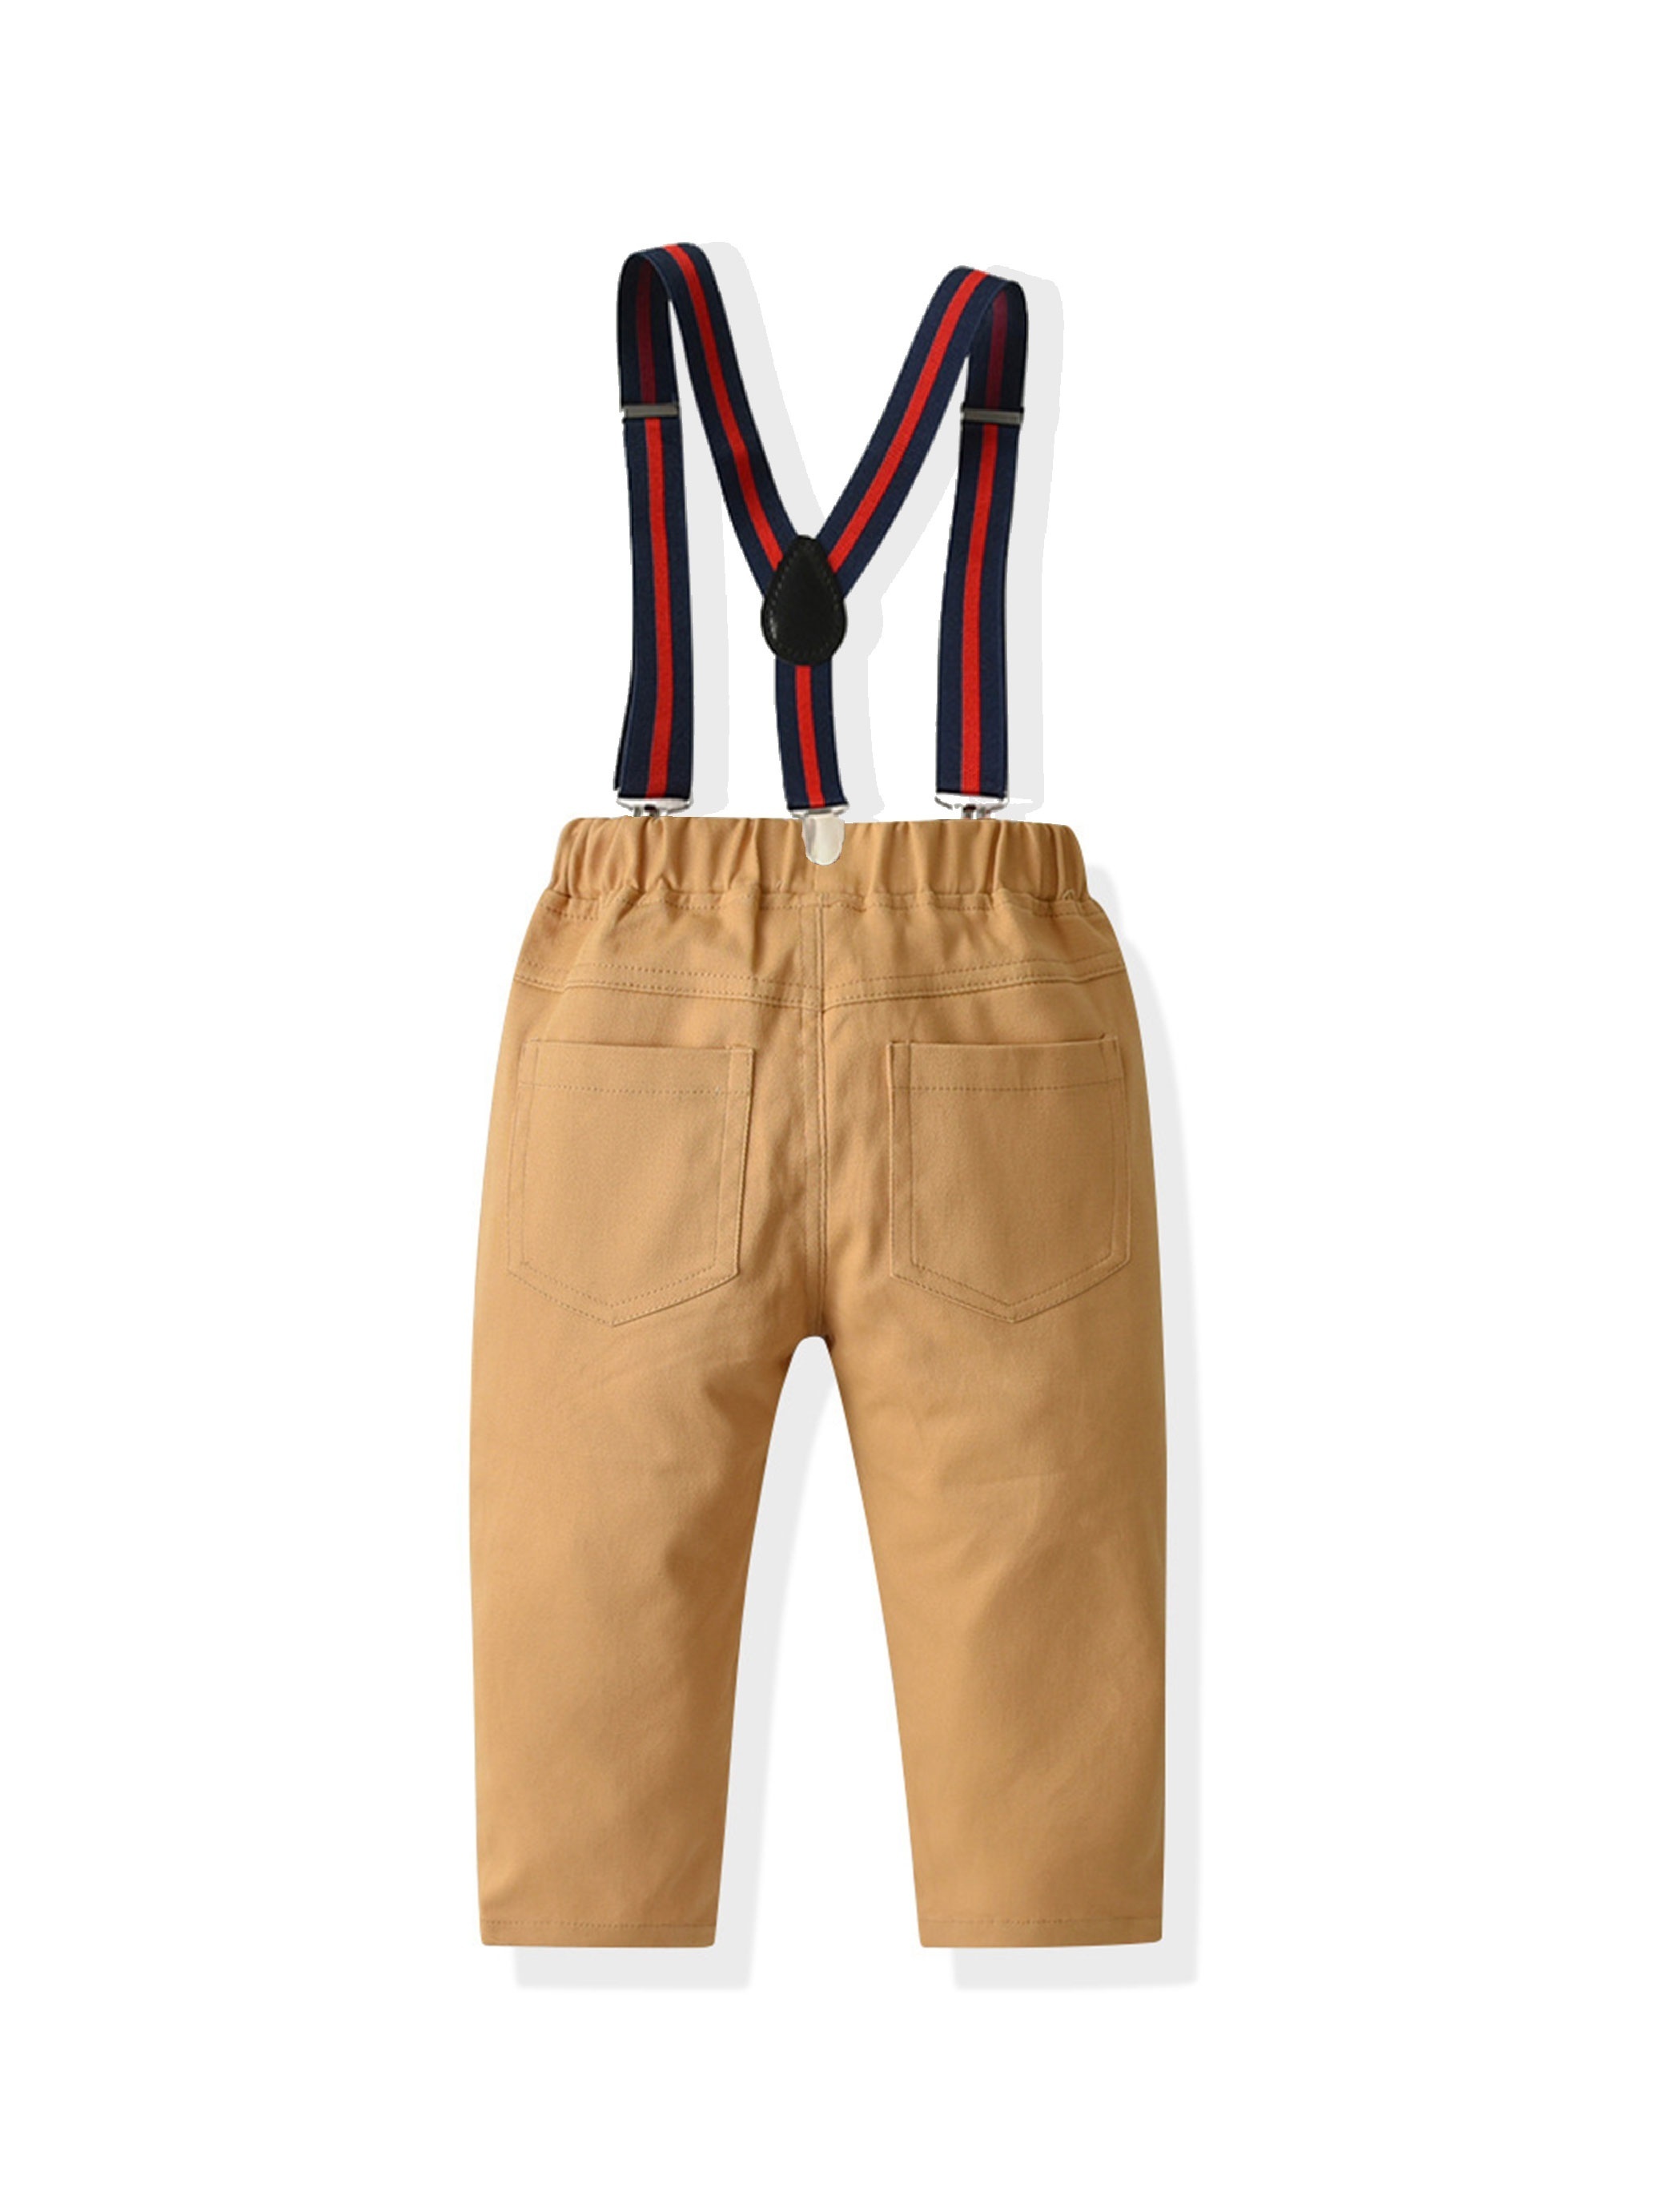 Oshkosh B'gosh Toddler Boys' Suspender Chino Pants - Khaki 12m